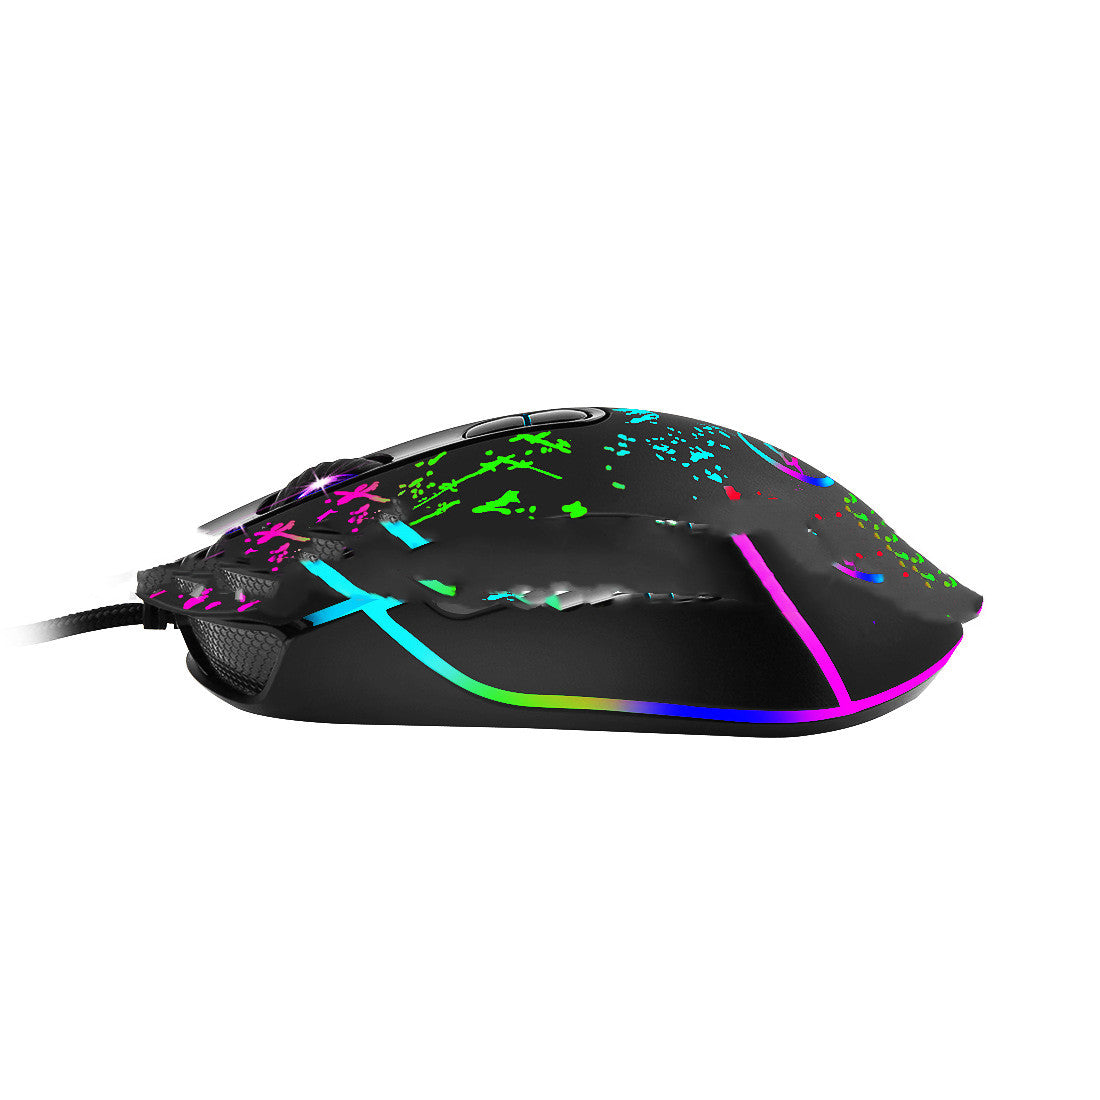 Gaming gaming mouse RGB